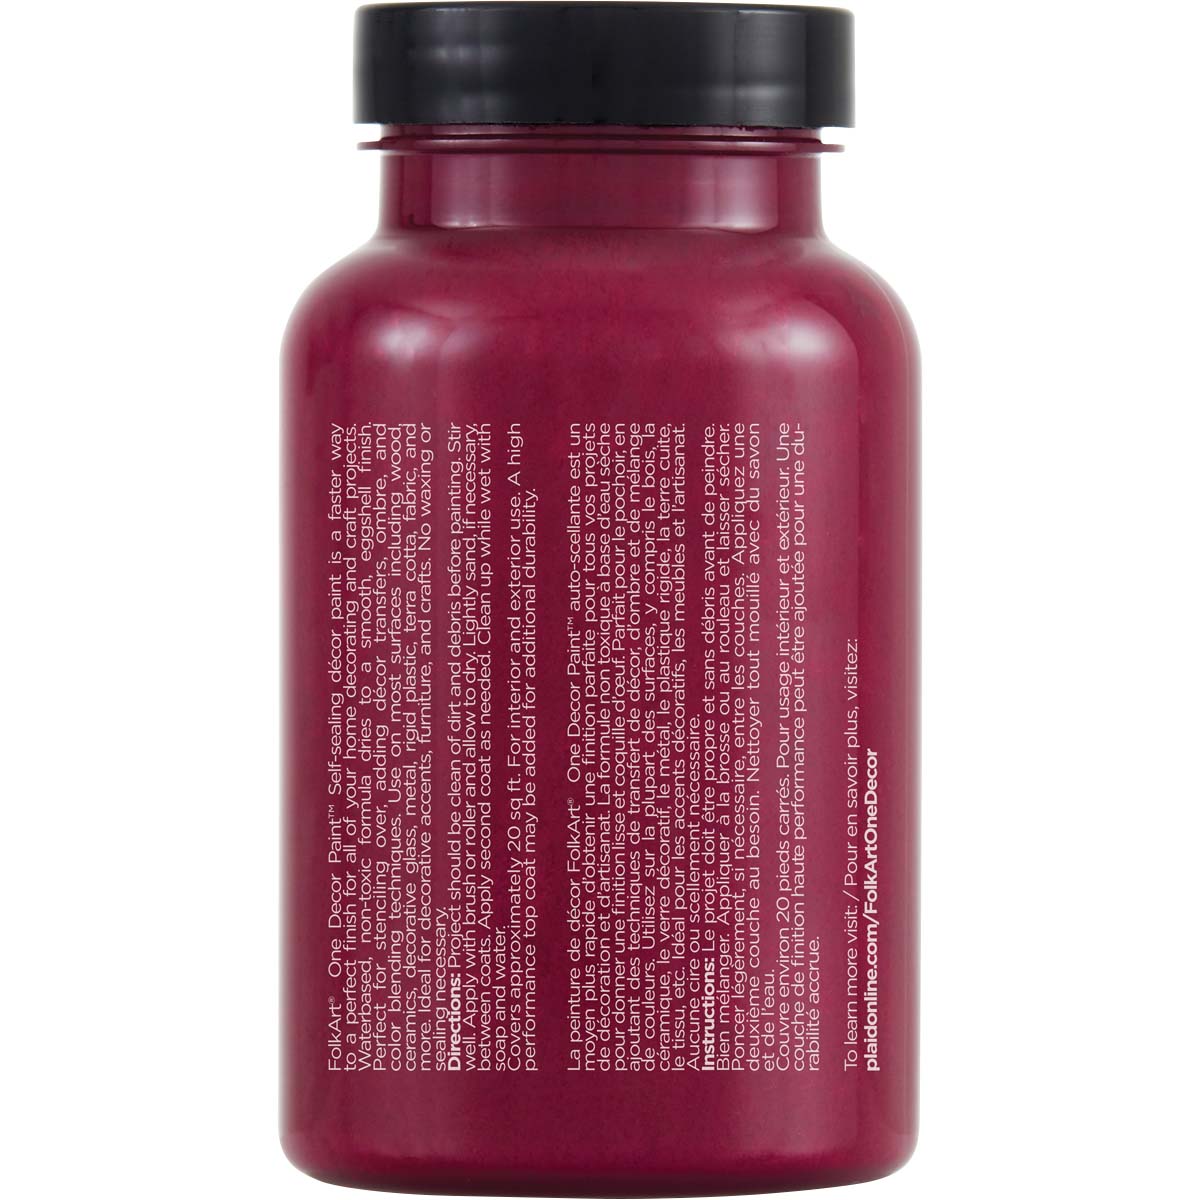 FolkArt ® One Décor Paint™ - Cranberry Cocktail, 8 oz. - 36057